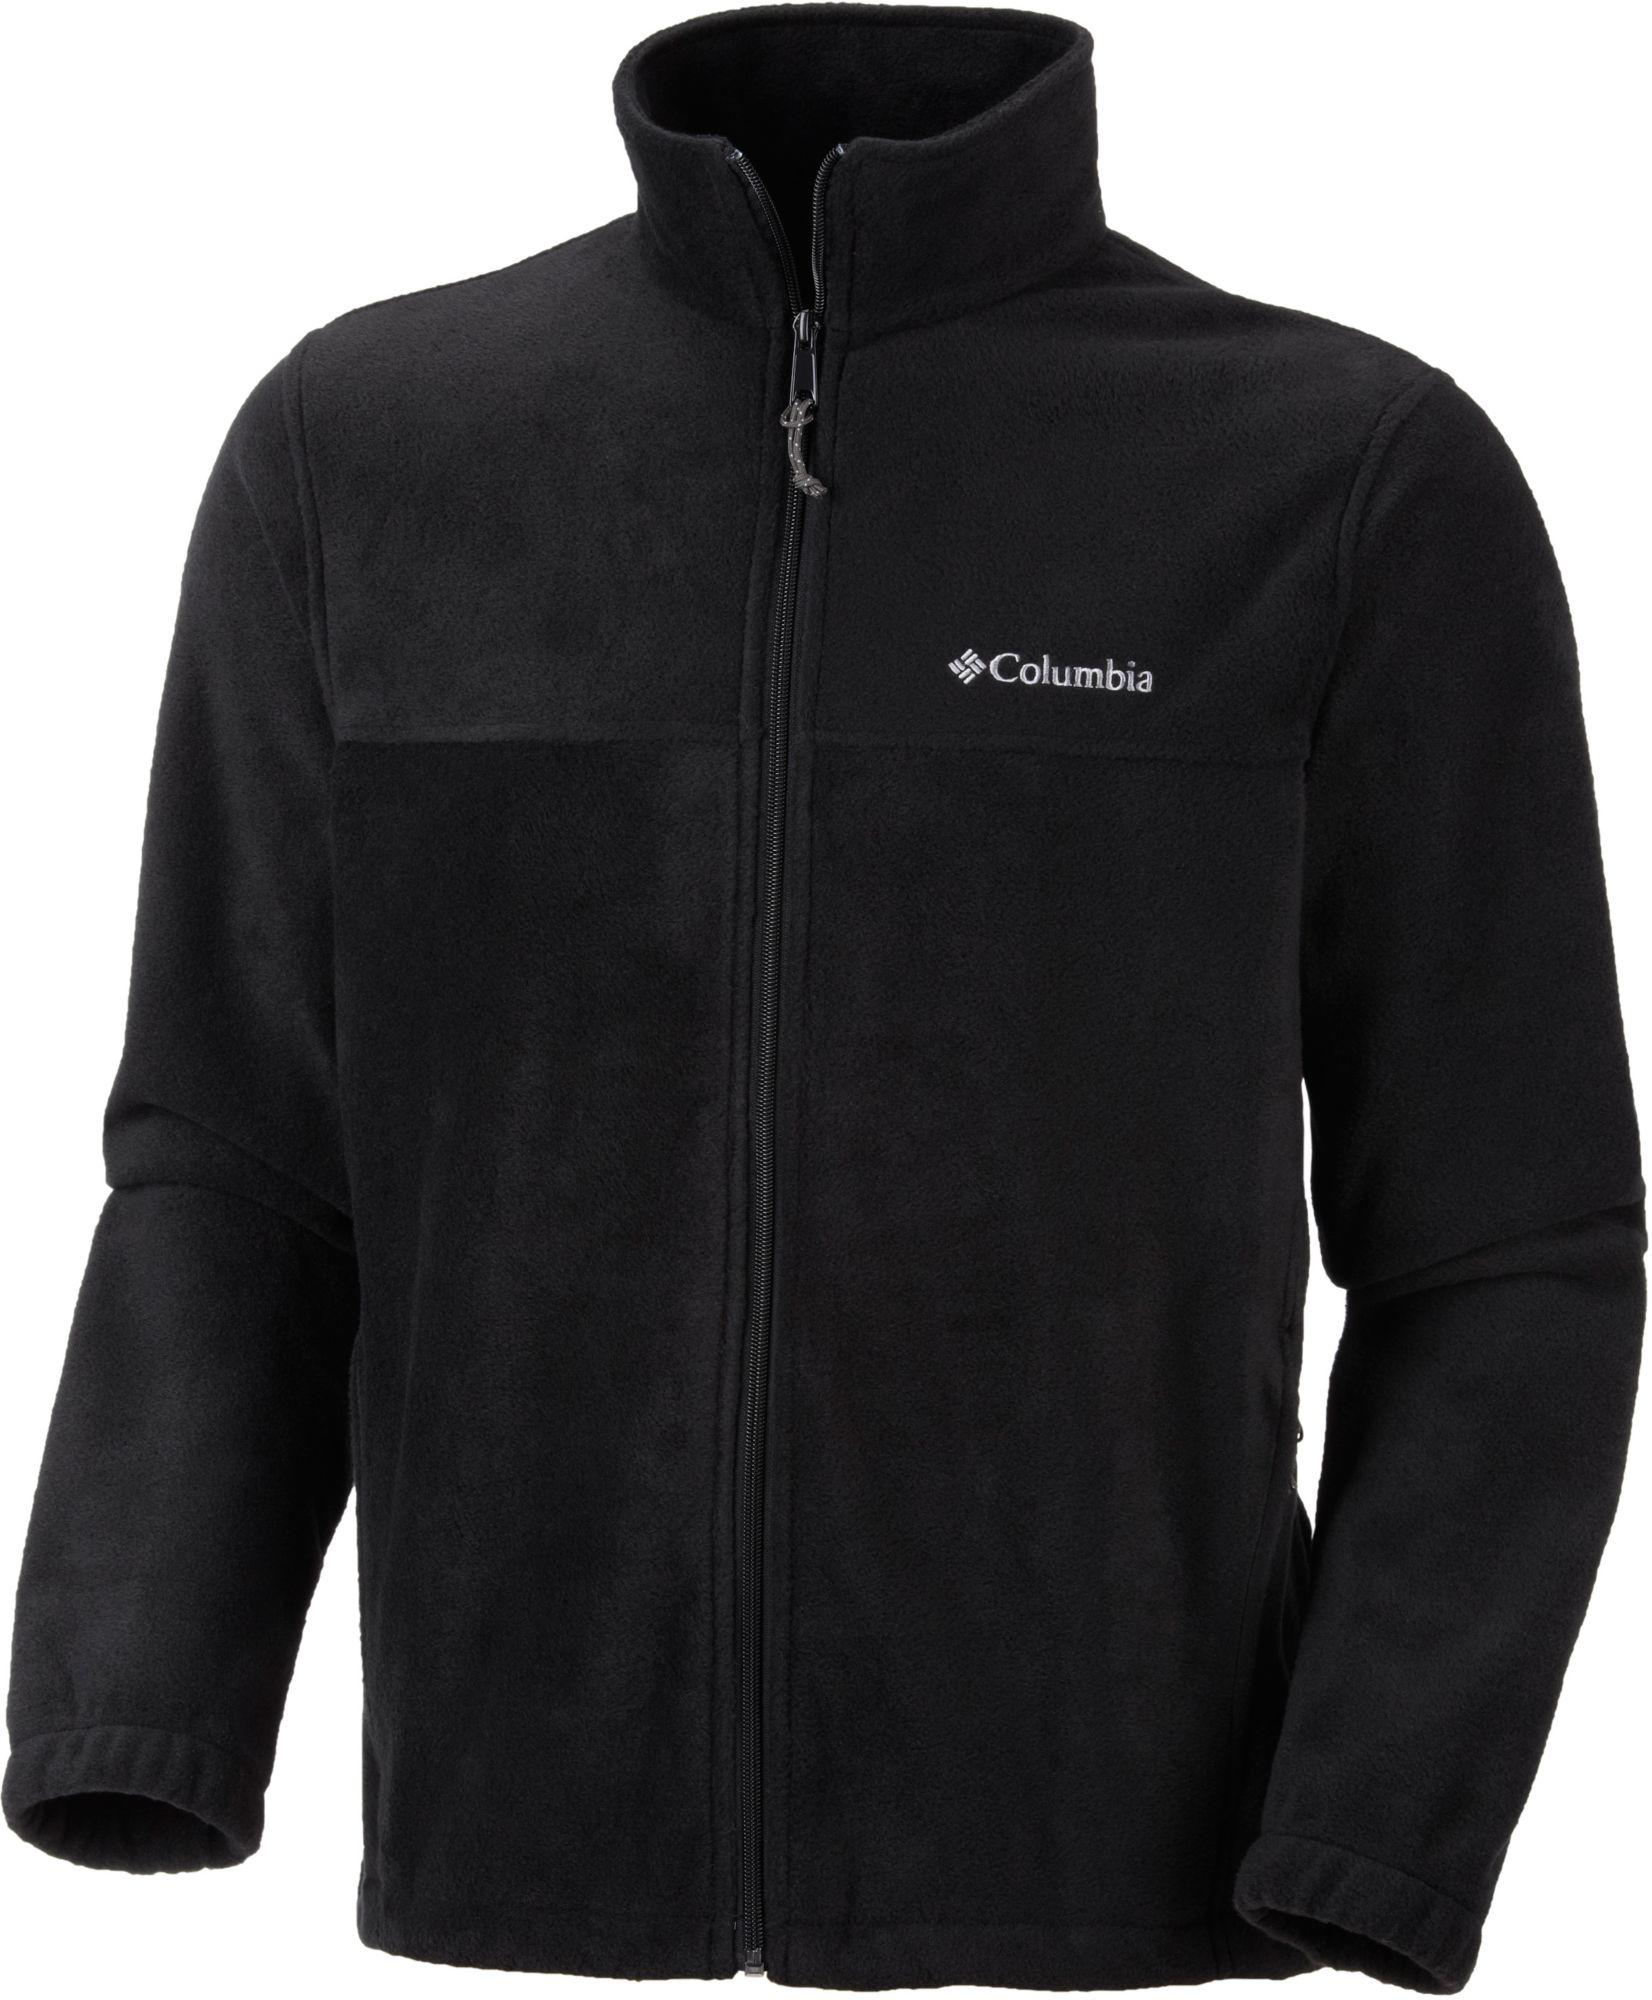 Columbia Steens Mountain Full Zip Fleece Jacket in Black for Men - Lyst